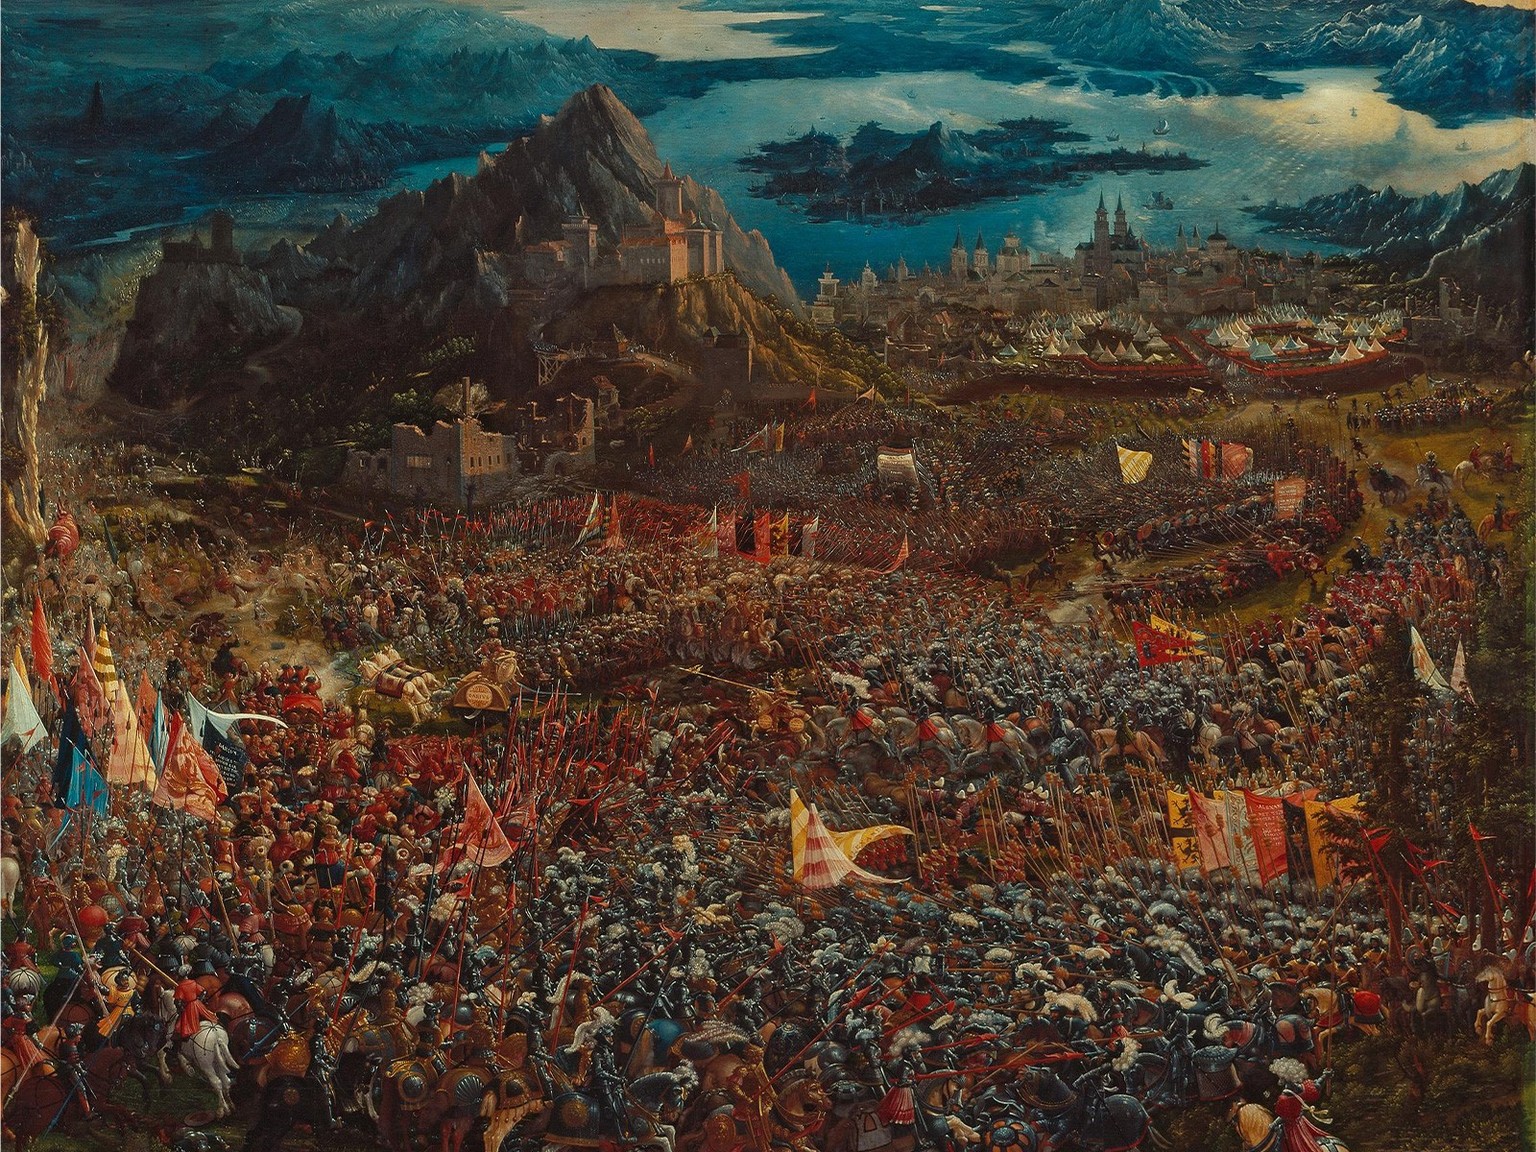 Une perspective audacieuse: La Bataille d’Alexandre (bataille d’Issos), par Albrecht Altdorfer, 1529.
https://www.sammlung.pinakothek.de/en/artwork/9pL3Qyz4eb